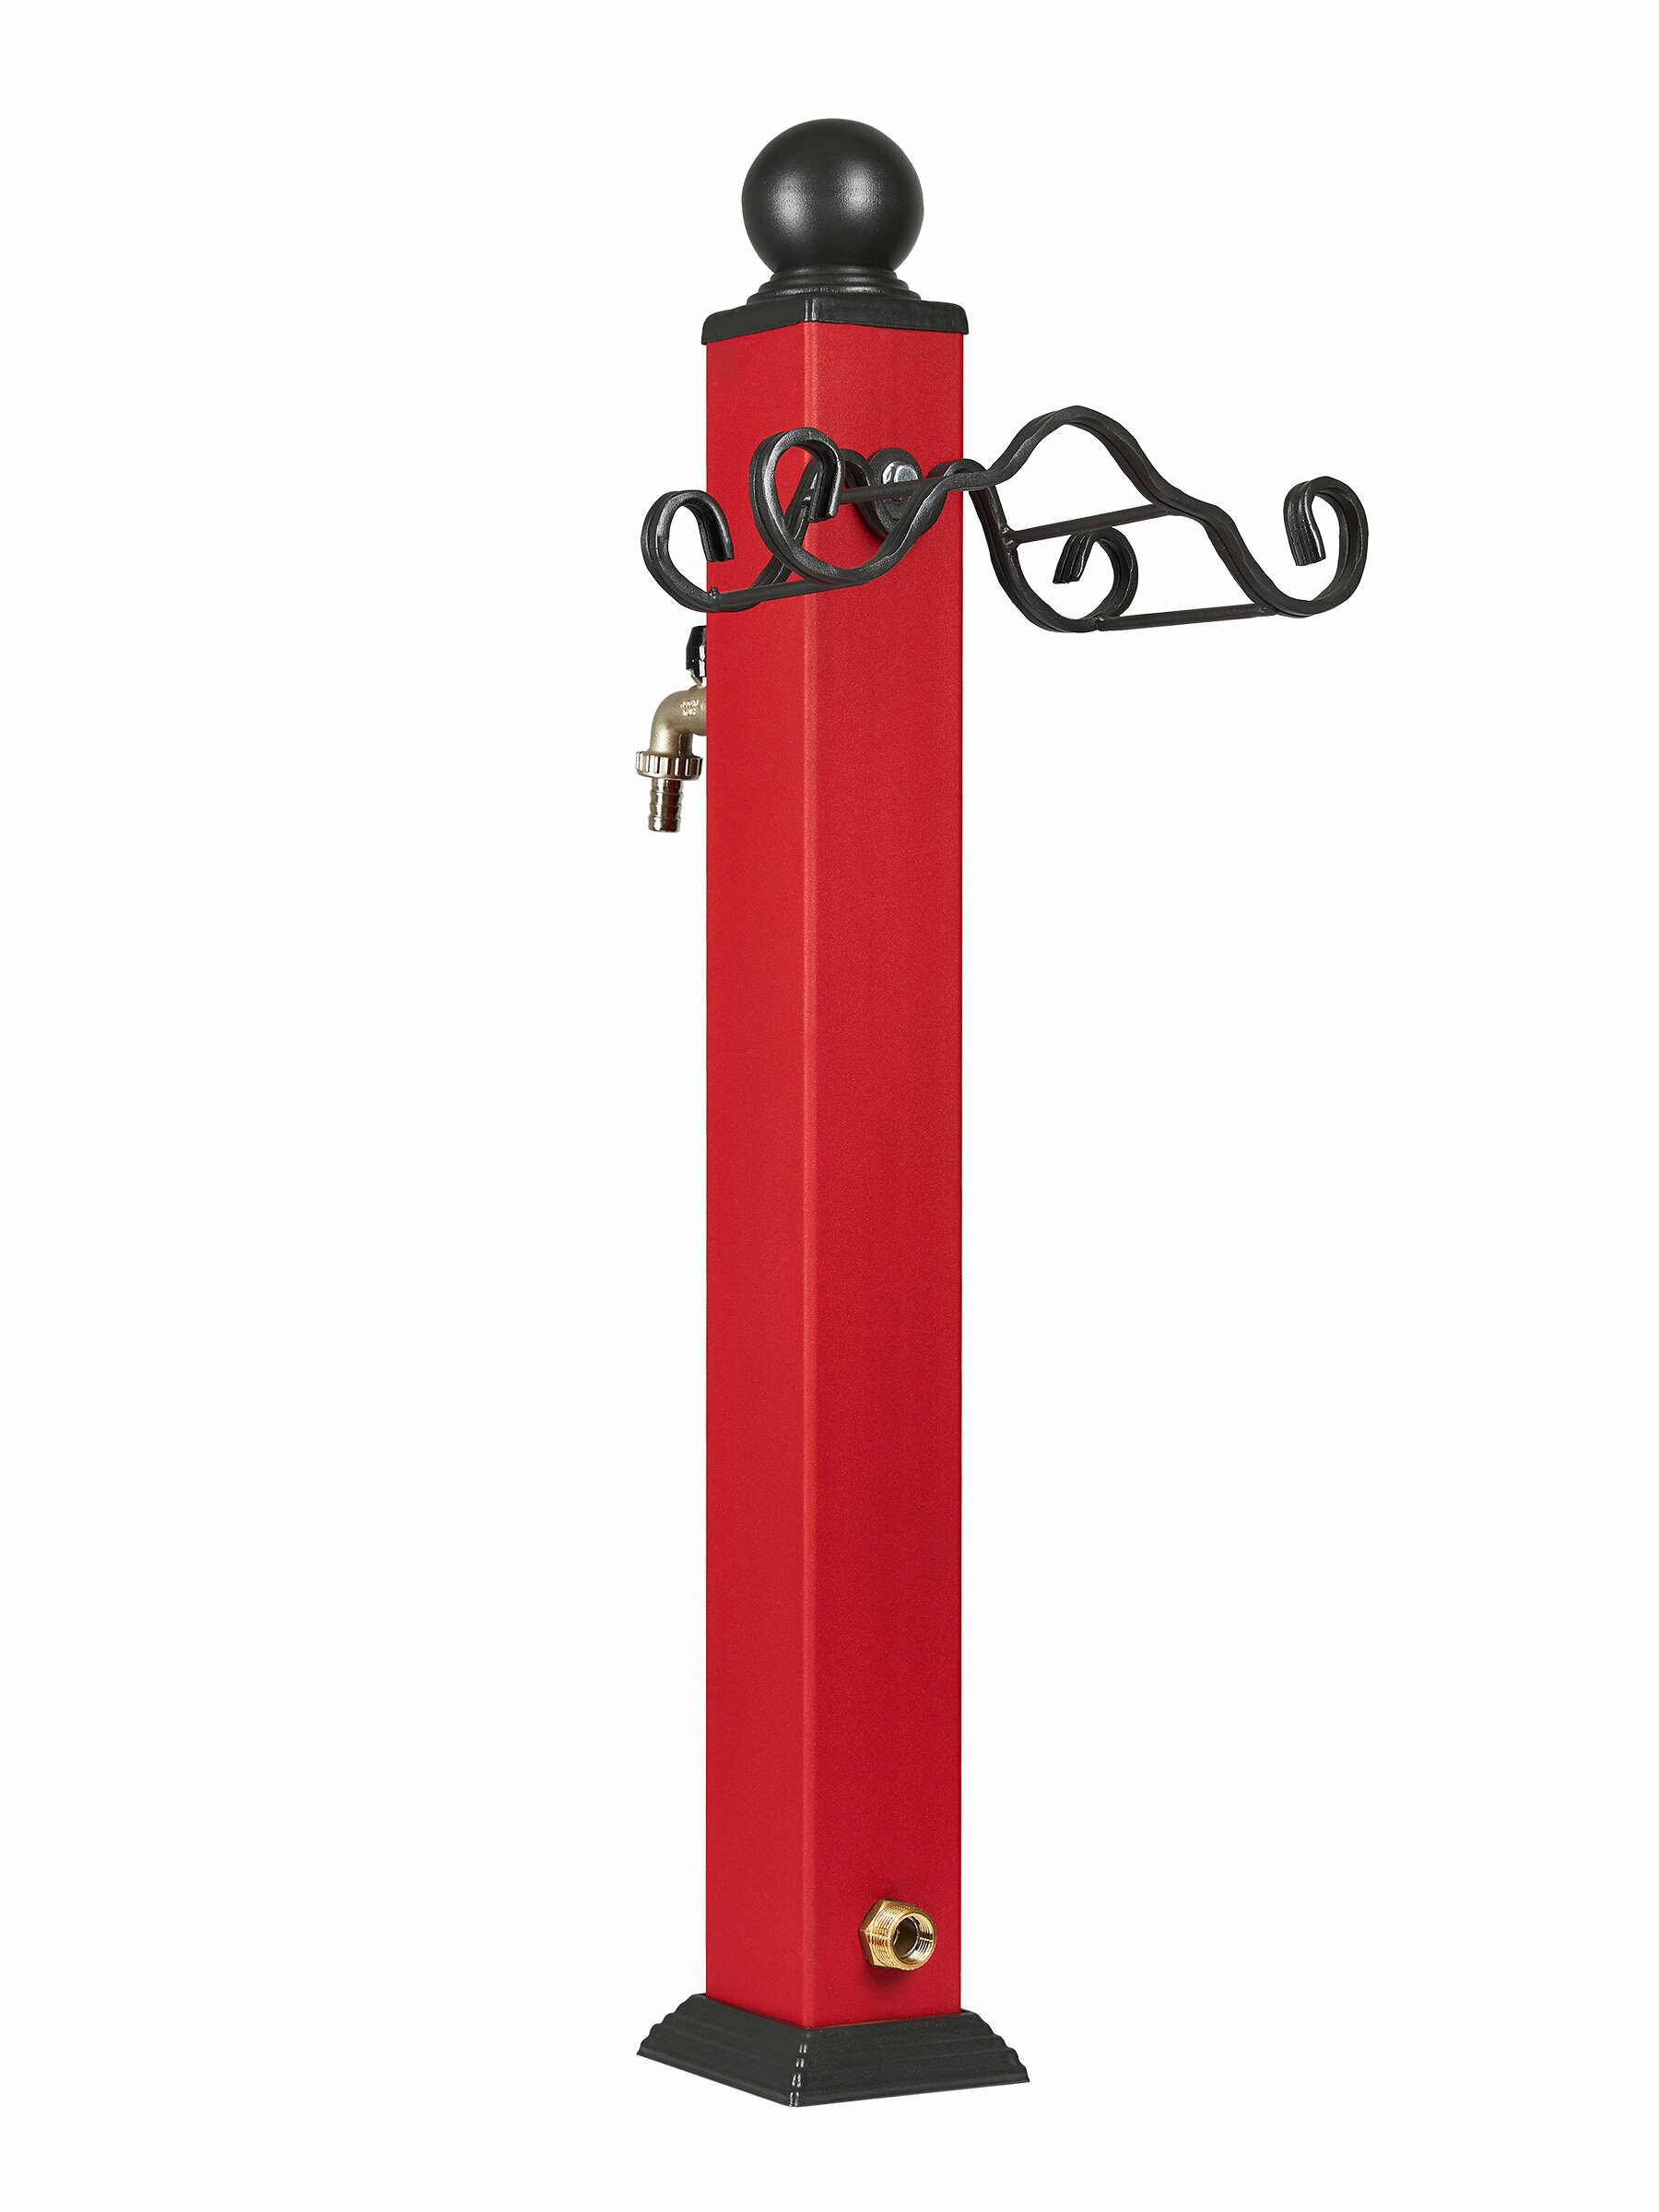 Водоразборная колонка SAHARA RED в комплекте с винт опорой для организации полива садовых участков парковых зон / цвет красный